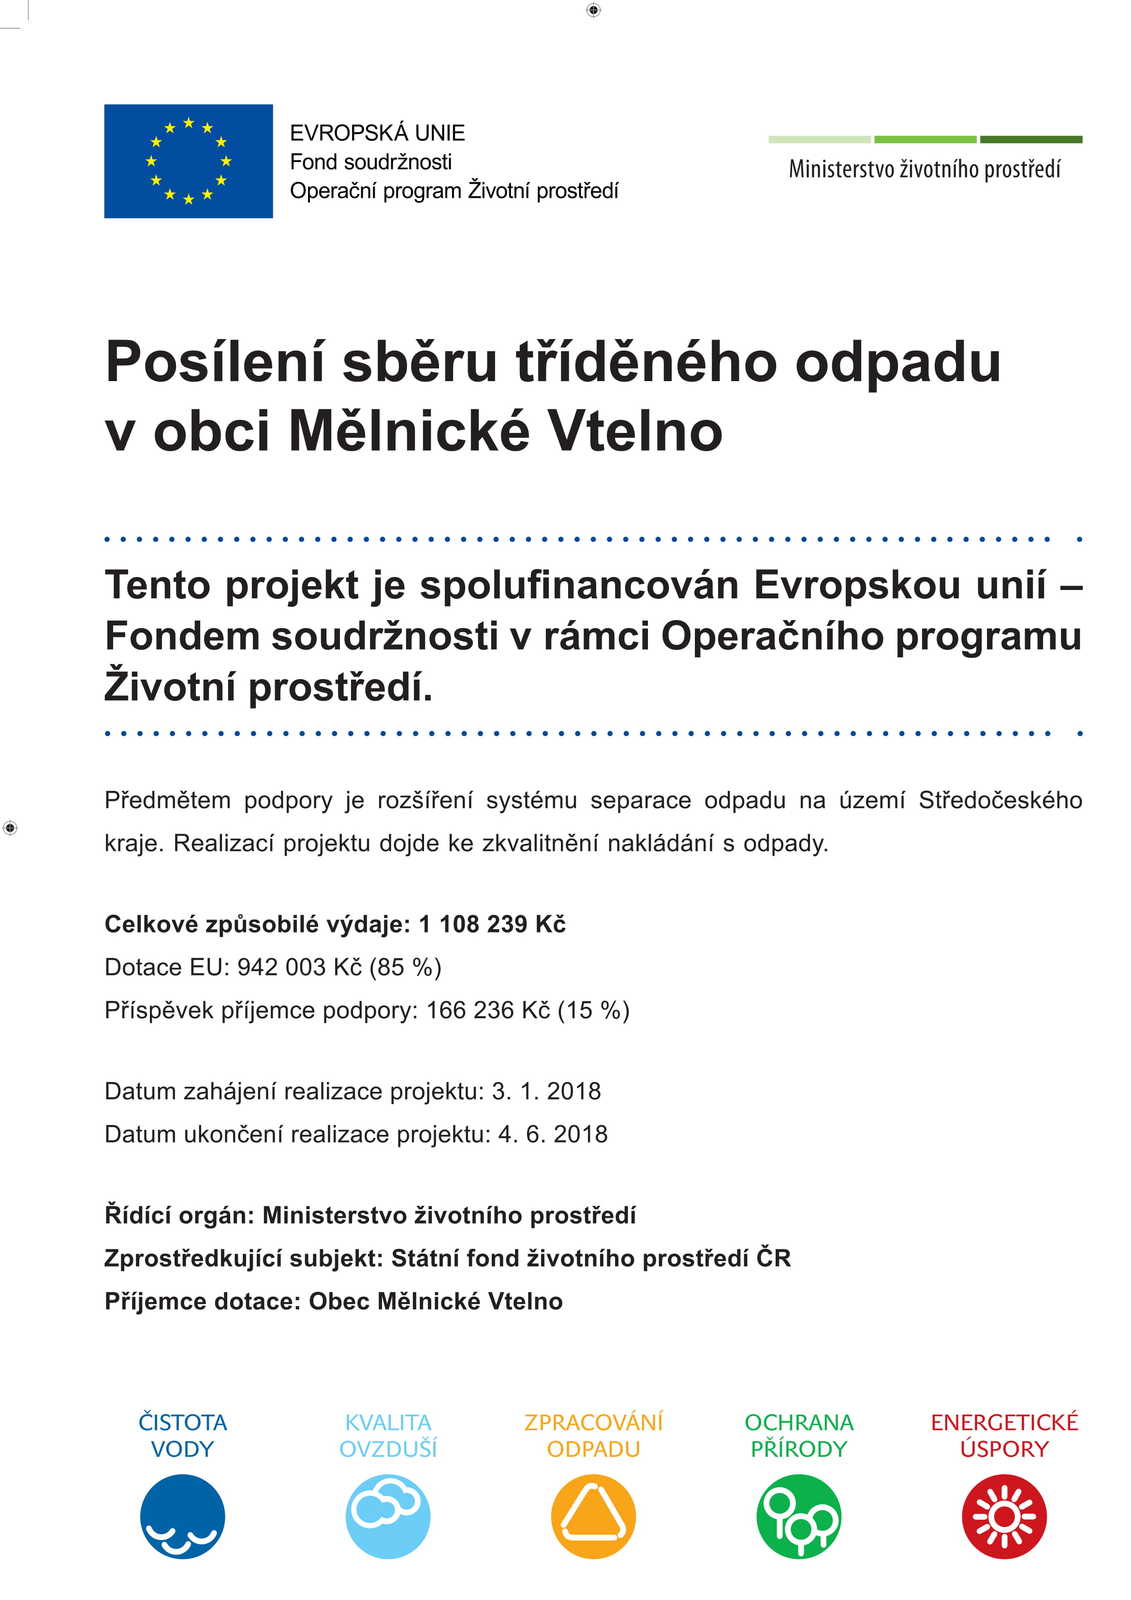 Posílení sběru tříděného odpadu v obci Mělnické Vtelno-1.jpg